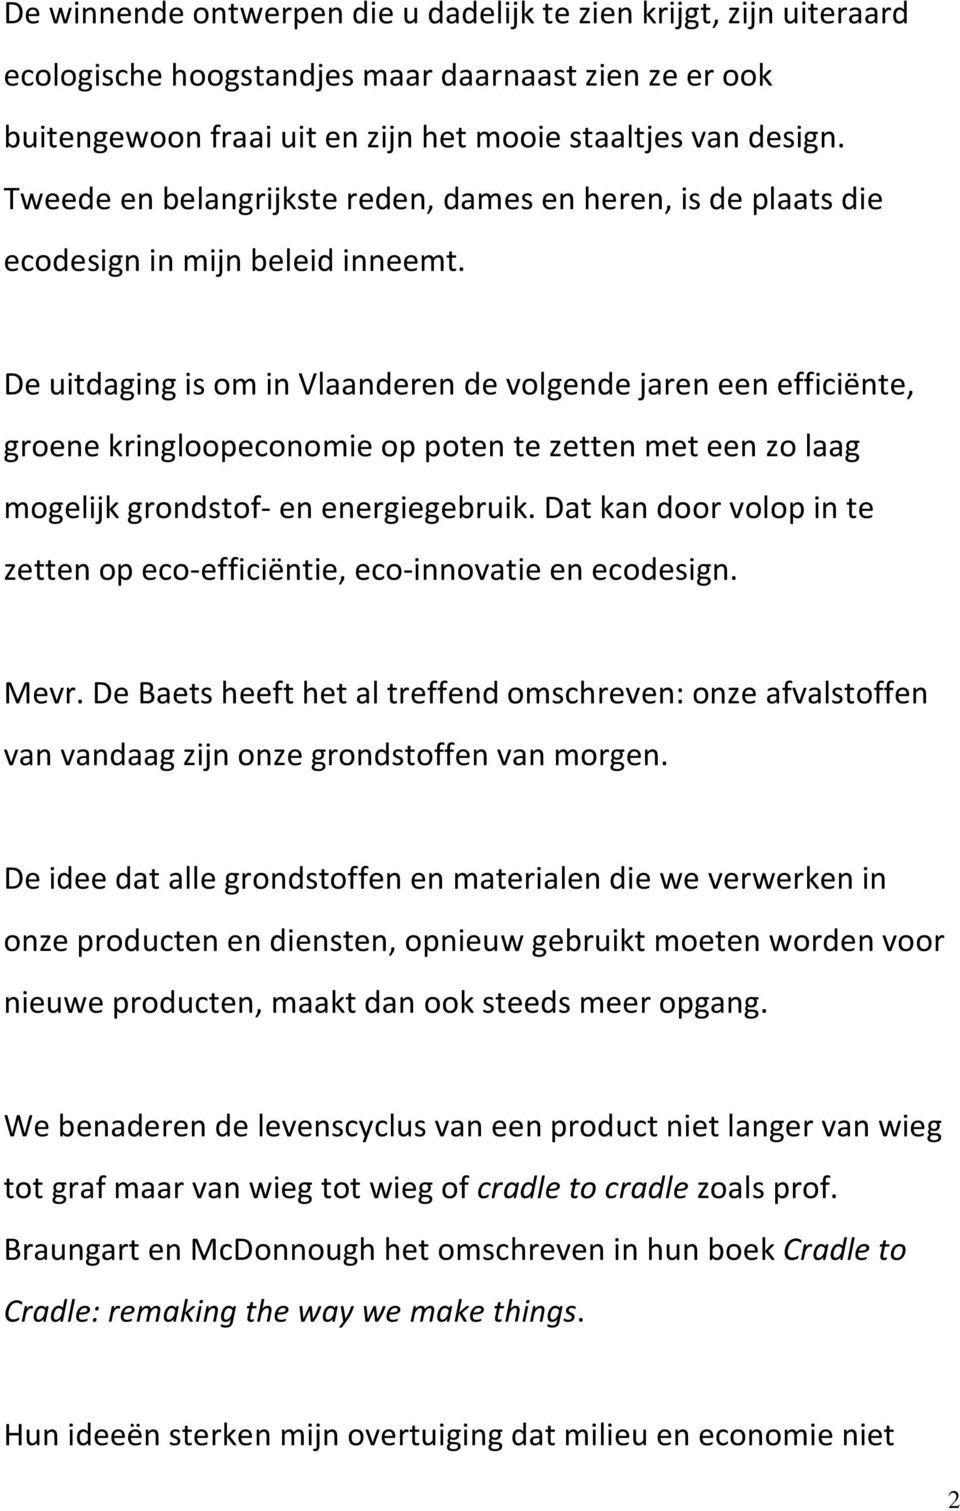 De uitdaging is om in Vlaanderen de volgende jaren een efficiënte, groene kringloopeconomie op poten te zetten met een zo laag mogelijk grondstof- en energiegebruik.